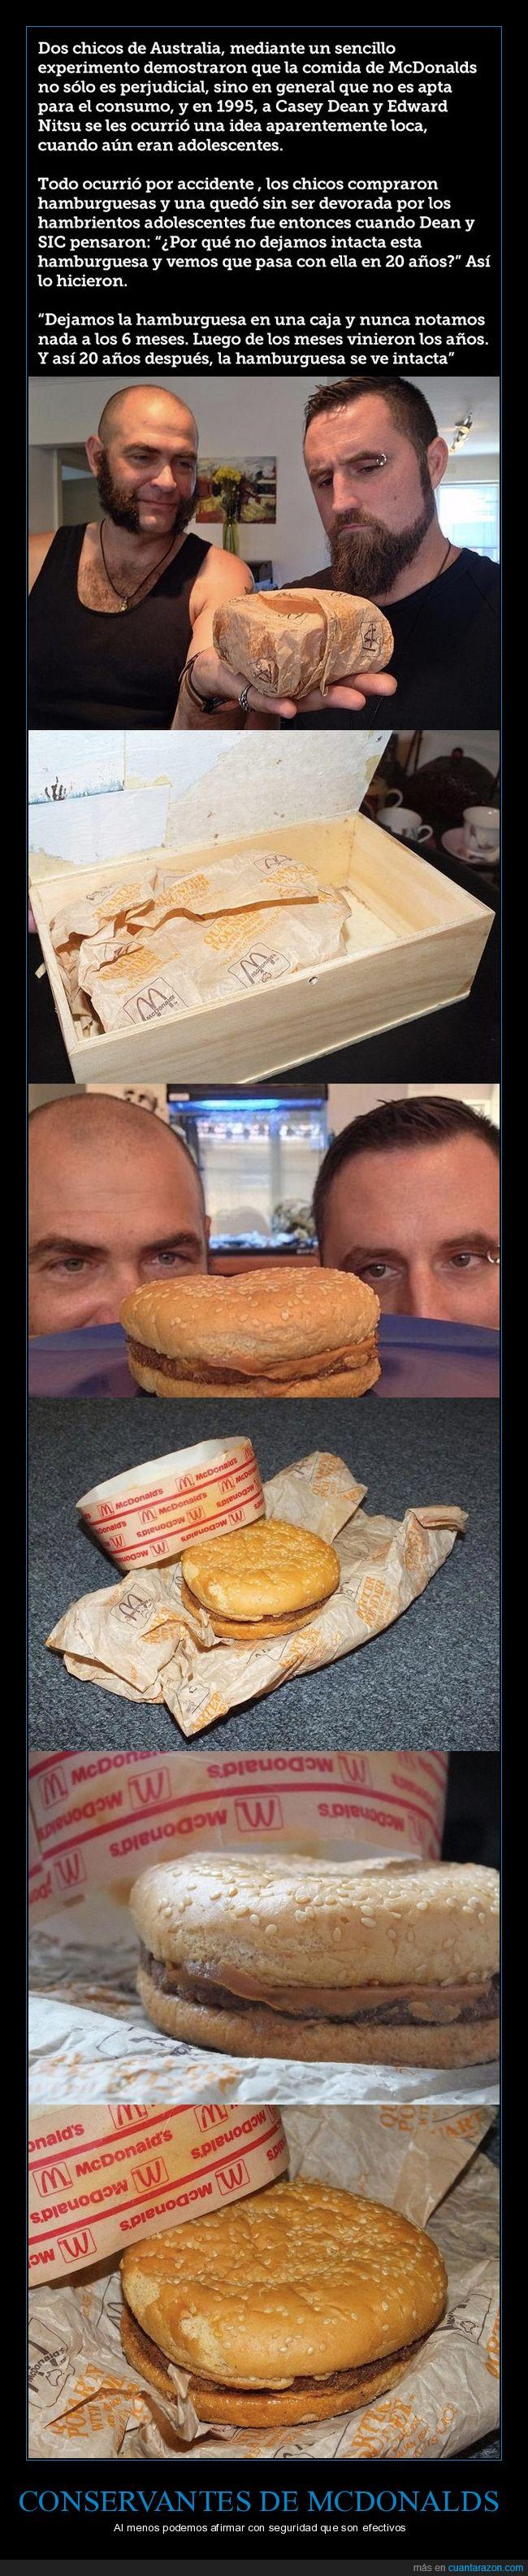 conservantes,hamburguesa,20 años,intacta,mcdonalds